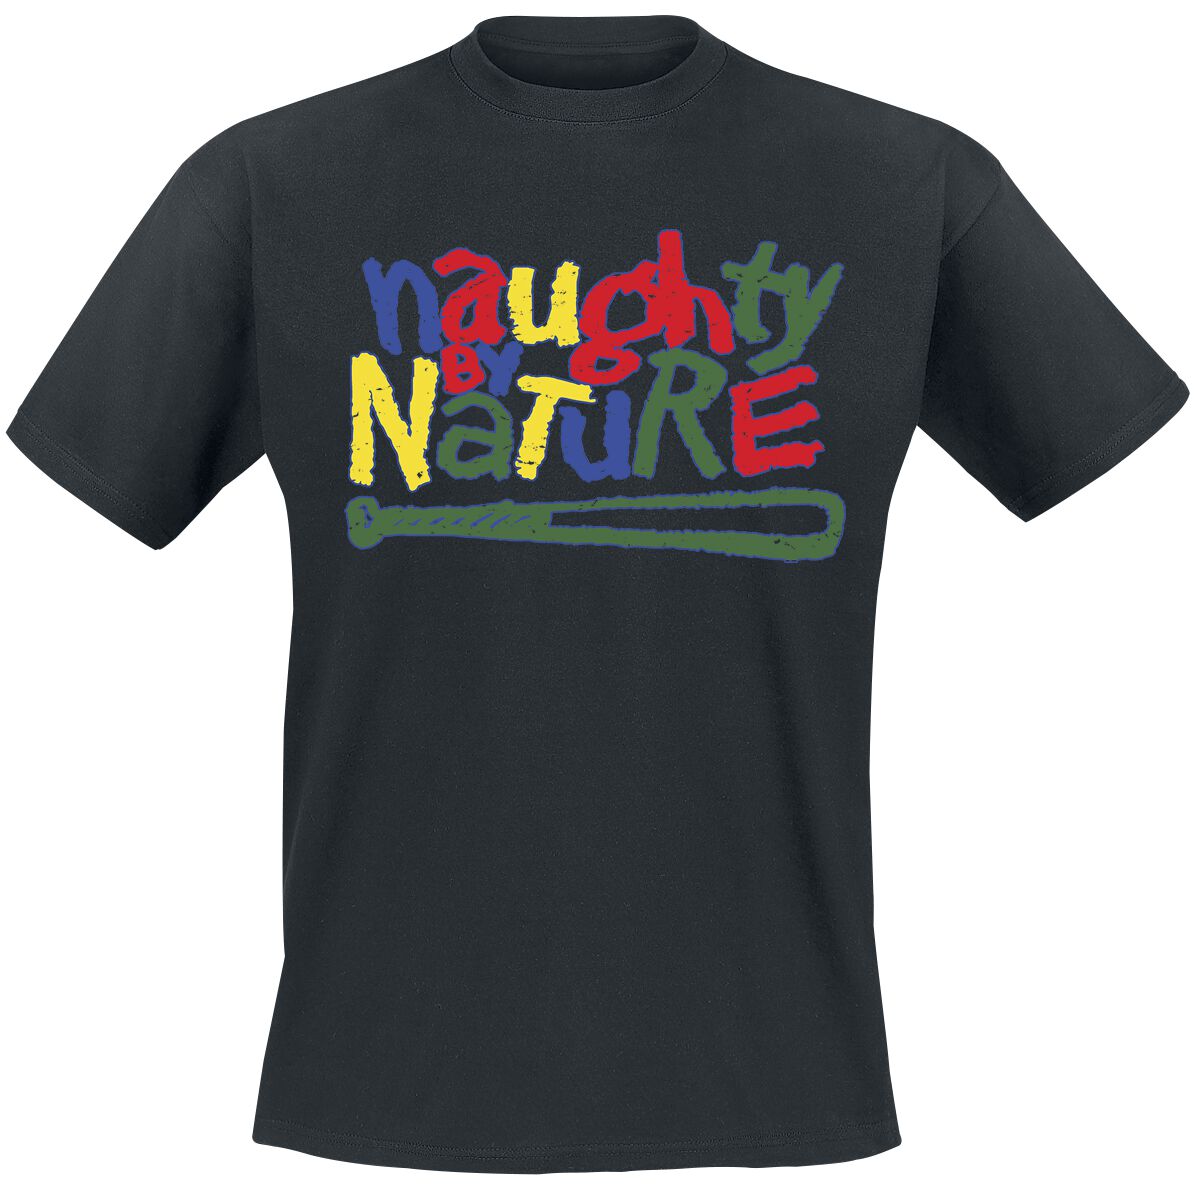 T-Shirt Manches courtes de Naughty by Nature - Classic Colourful Logo - S à 4XL - pour Homme - noir